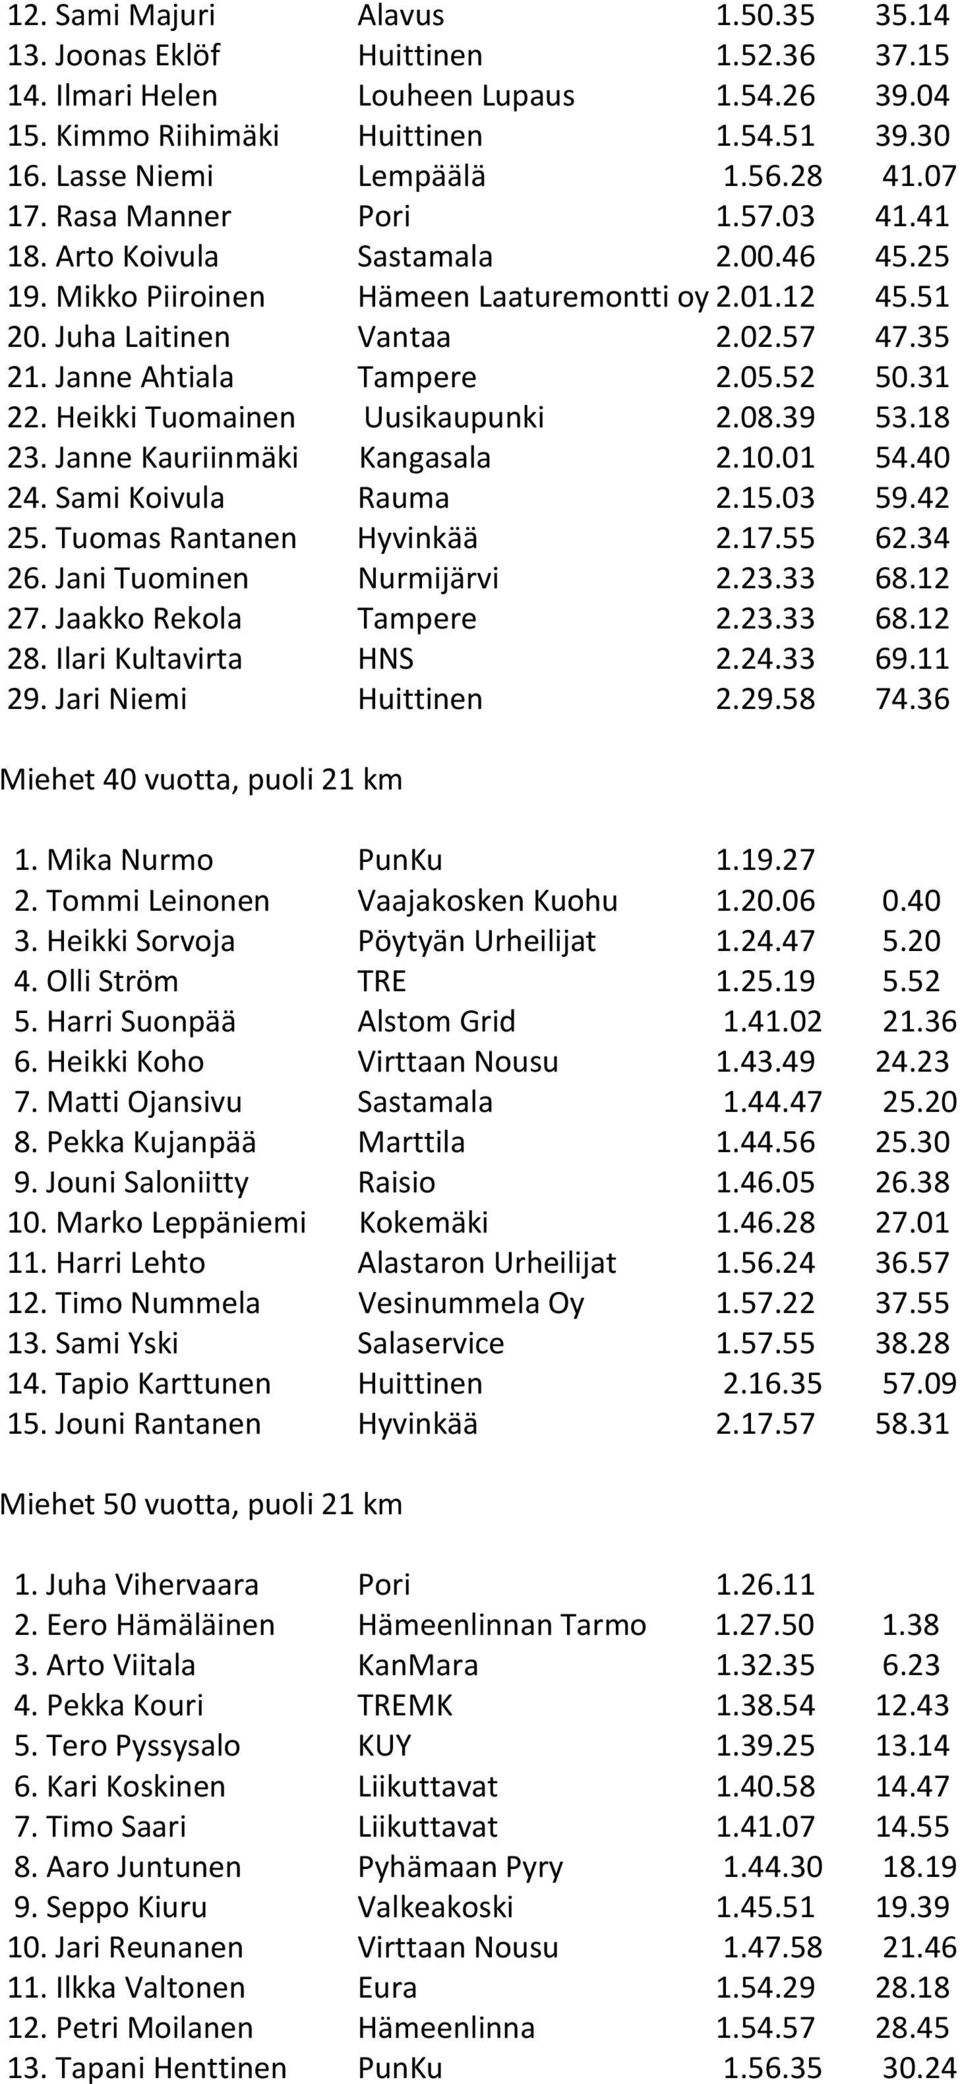 Janne Ahtiala Tampere 2.05.52 50.31 22. Heikki Tuomainen Uusikaupunki 2.08.39 53.18 23. Janne Kauriinmäki Kangasala 2.10.01 54.40 24. Sami Koivula Rauma 2.15.03 59.42 25. Tuomas Rantanen Hyvinkää 2.